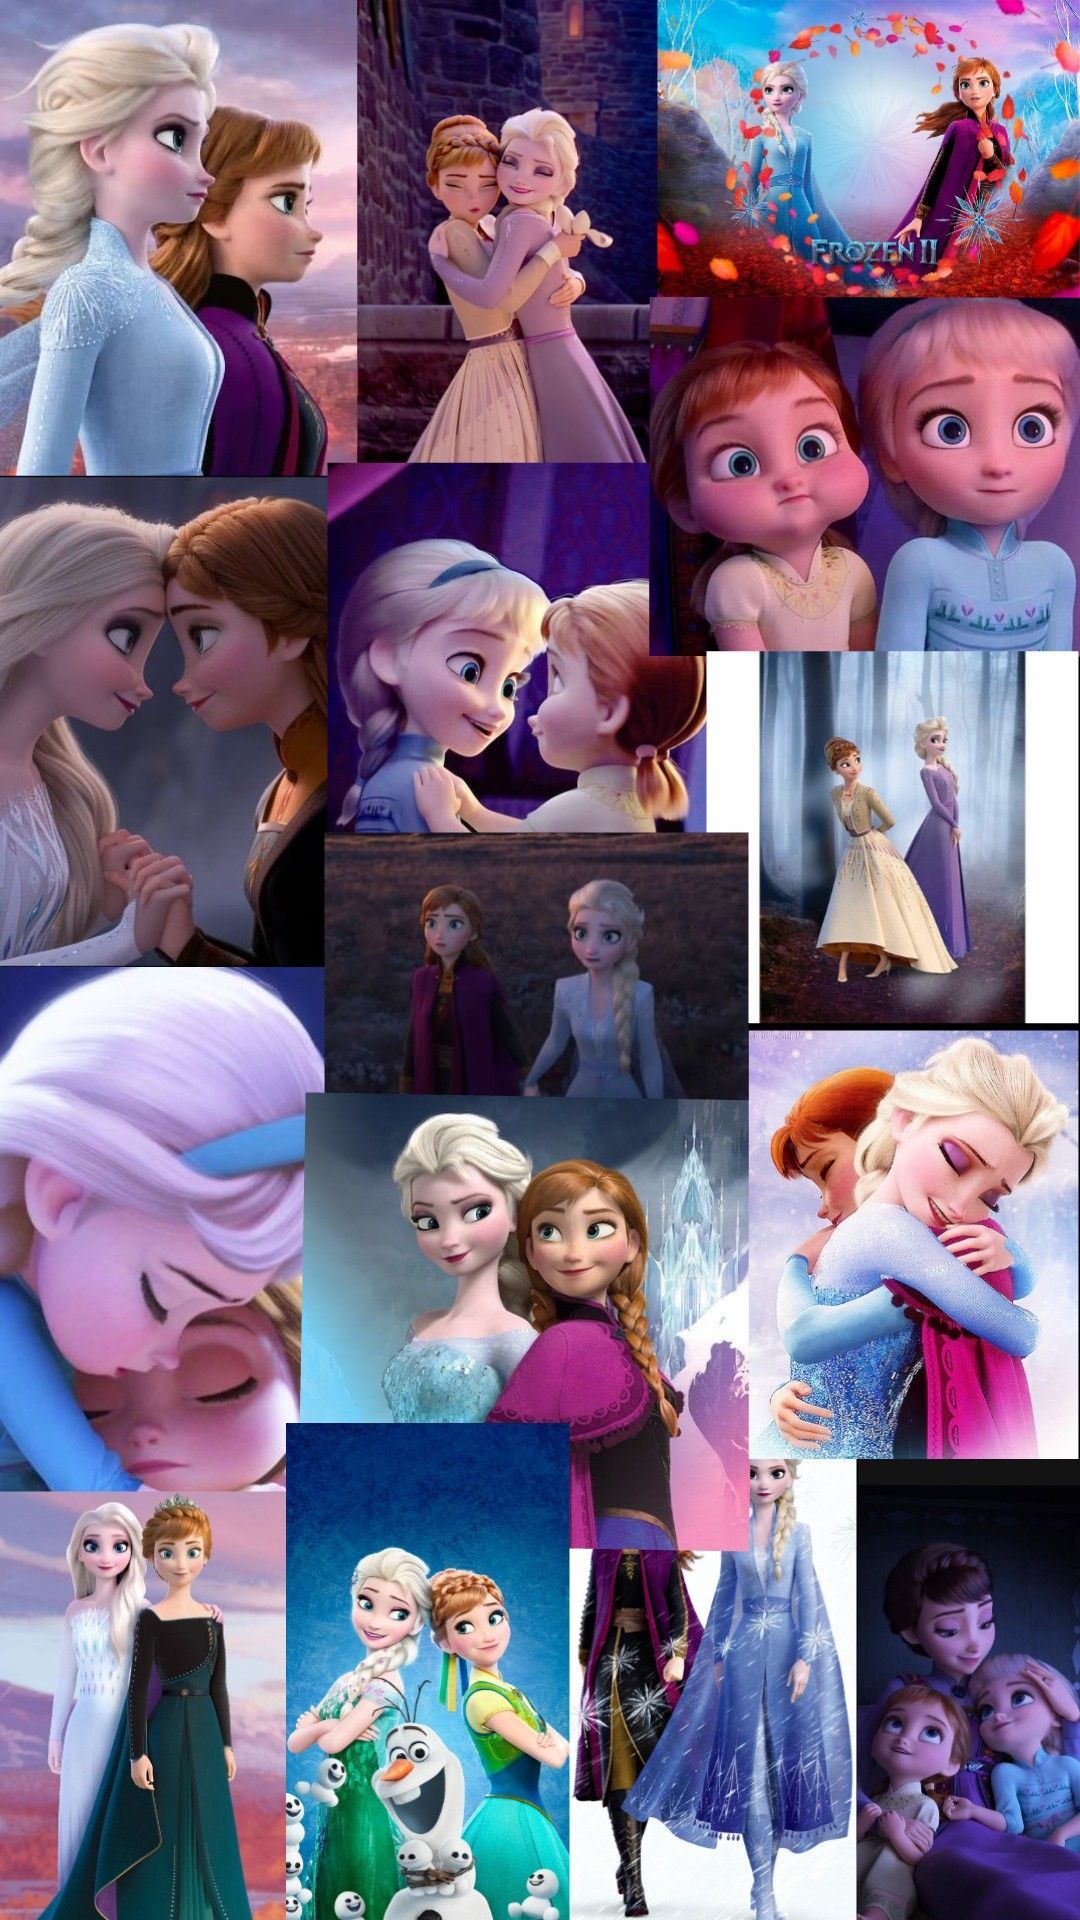 Elsa and Anna wallpaper. Disney frozen elsa art, Disney princess wallpaper, Disney princess image